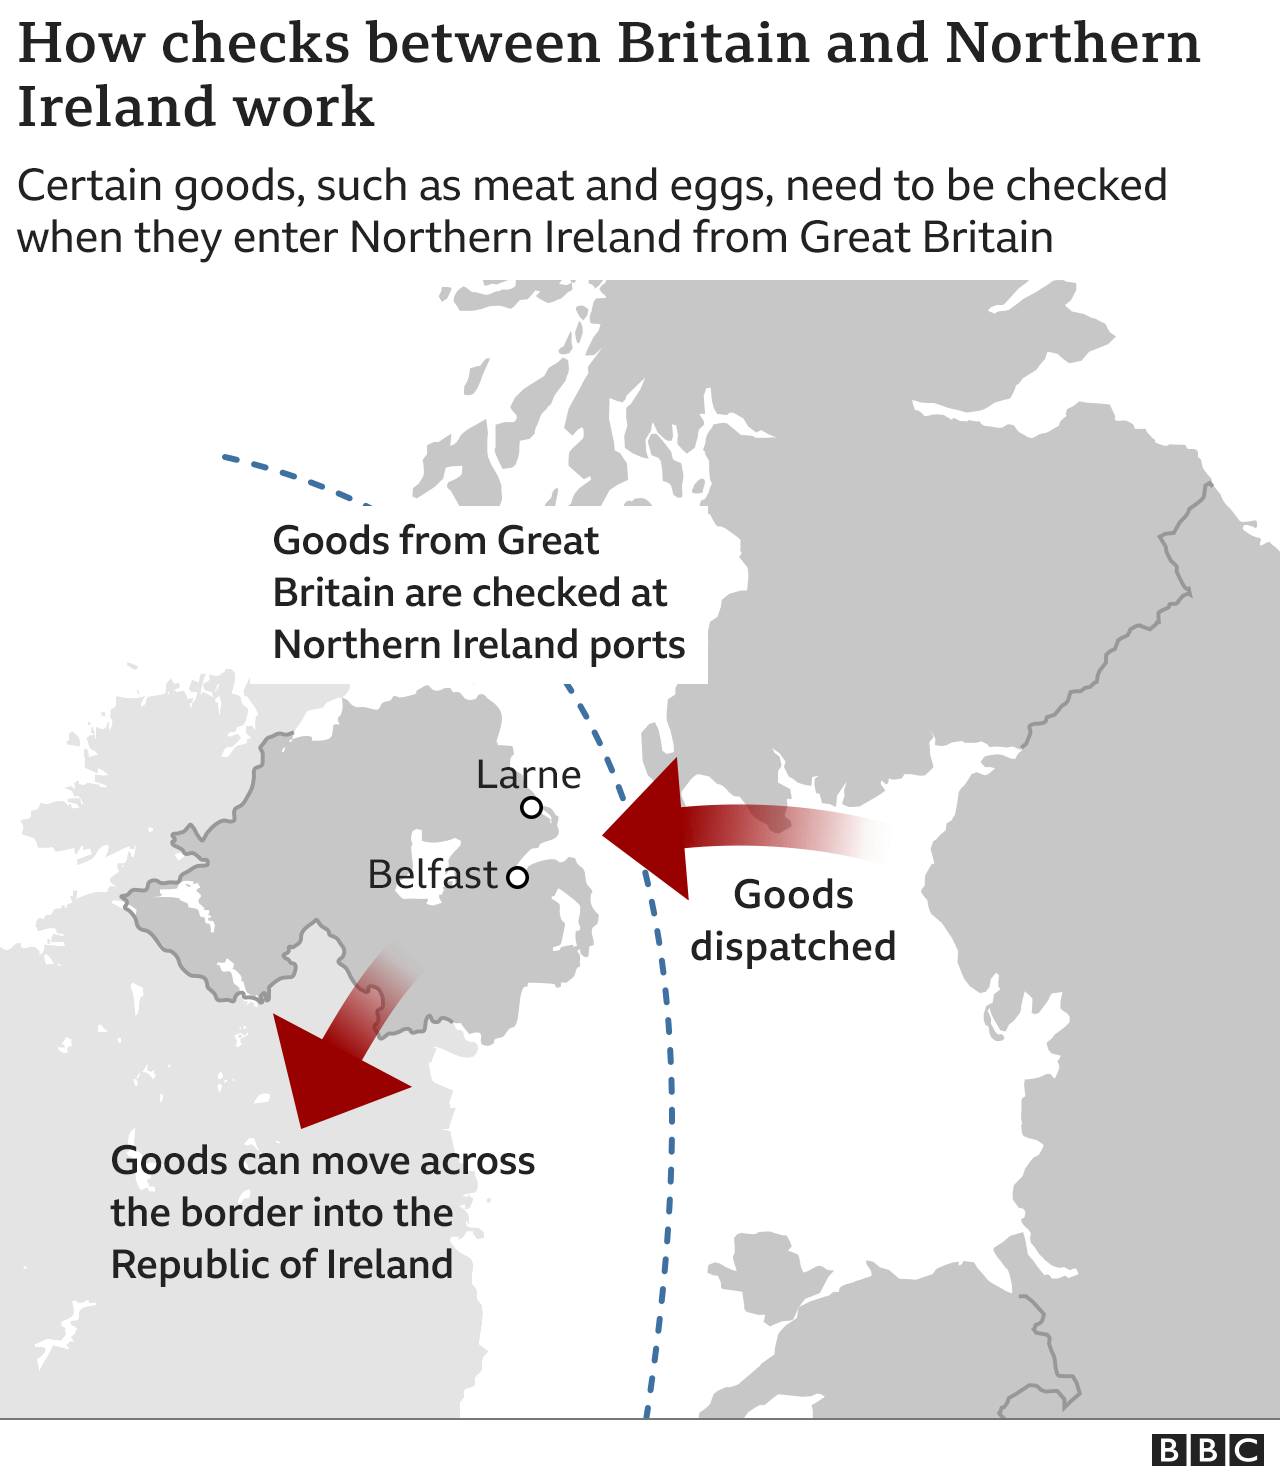 Karte des Vereinigten Königreichs, die zeigt, wie Waren von GB nach NI und weiter in die Republik Irland reisen.